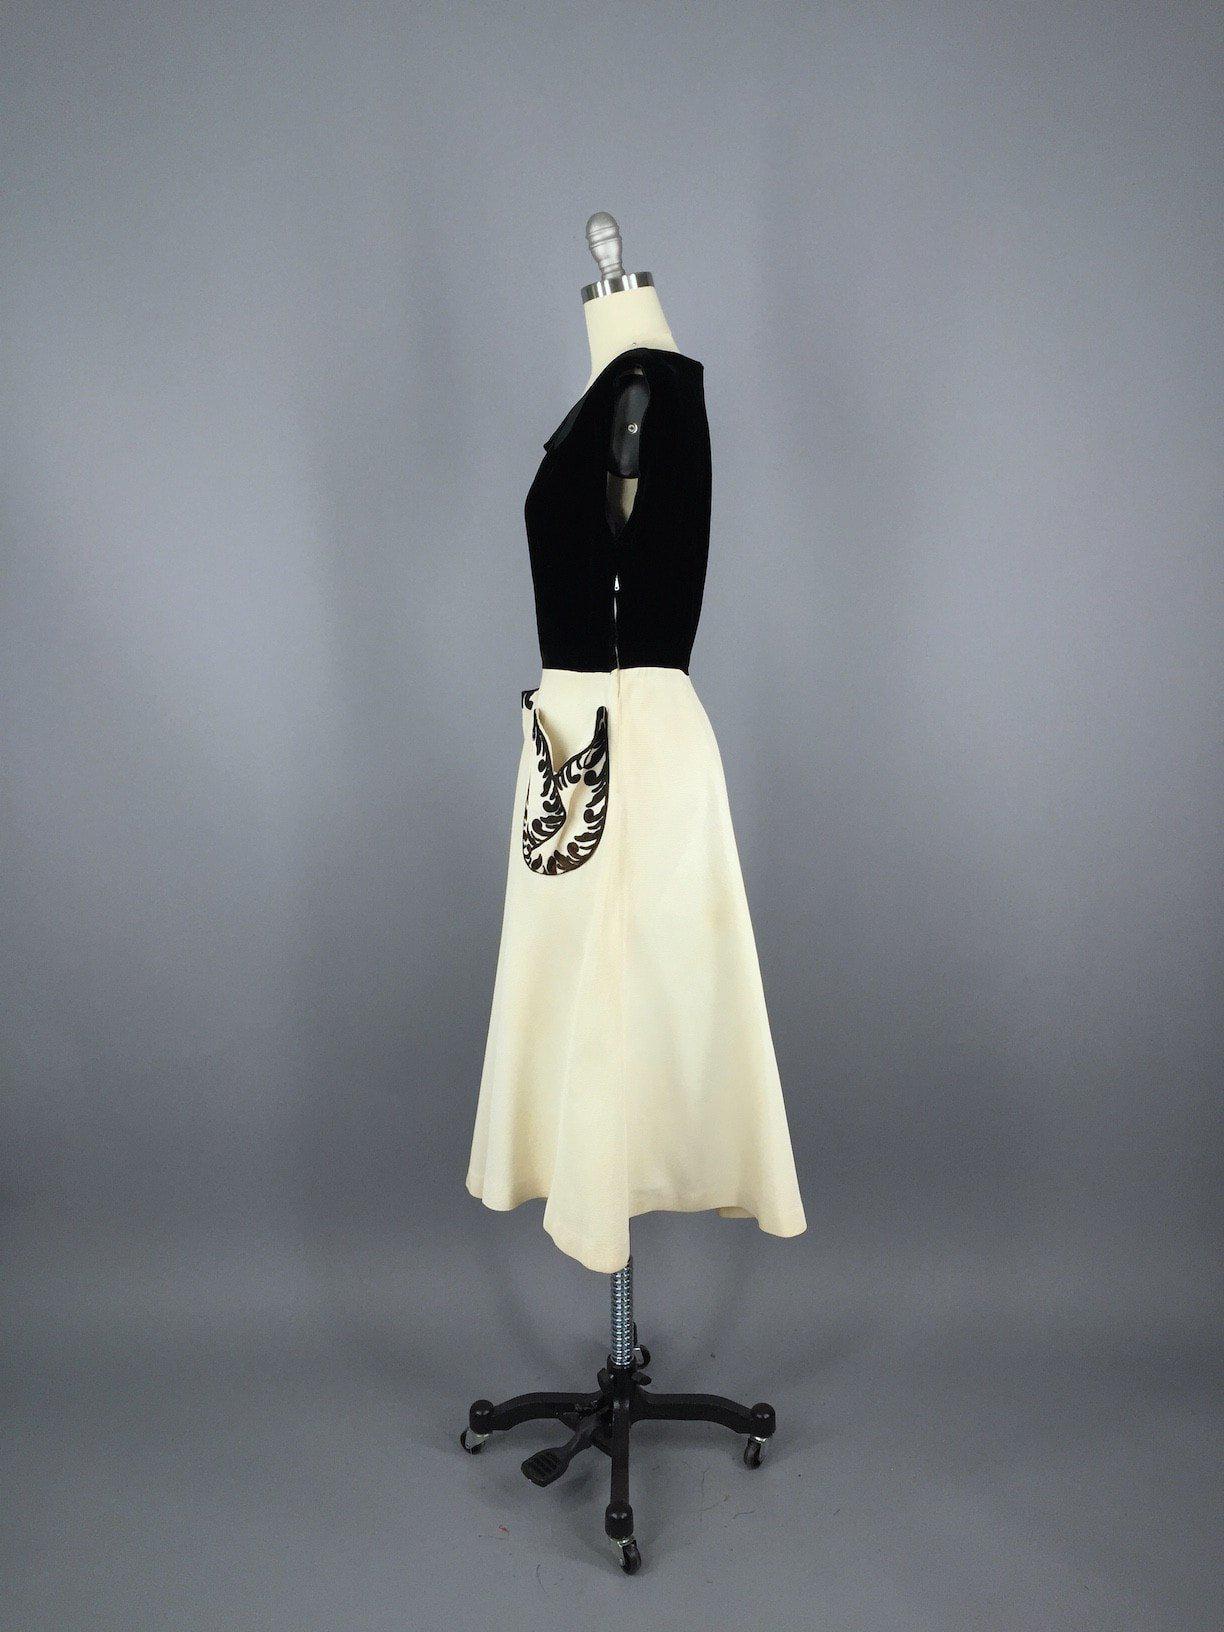 Vintage 1950s Party Dress / Black Velvet - ThisBlueBird